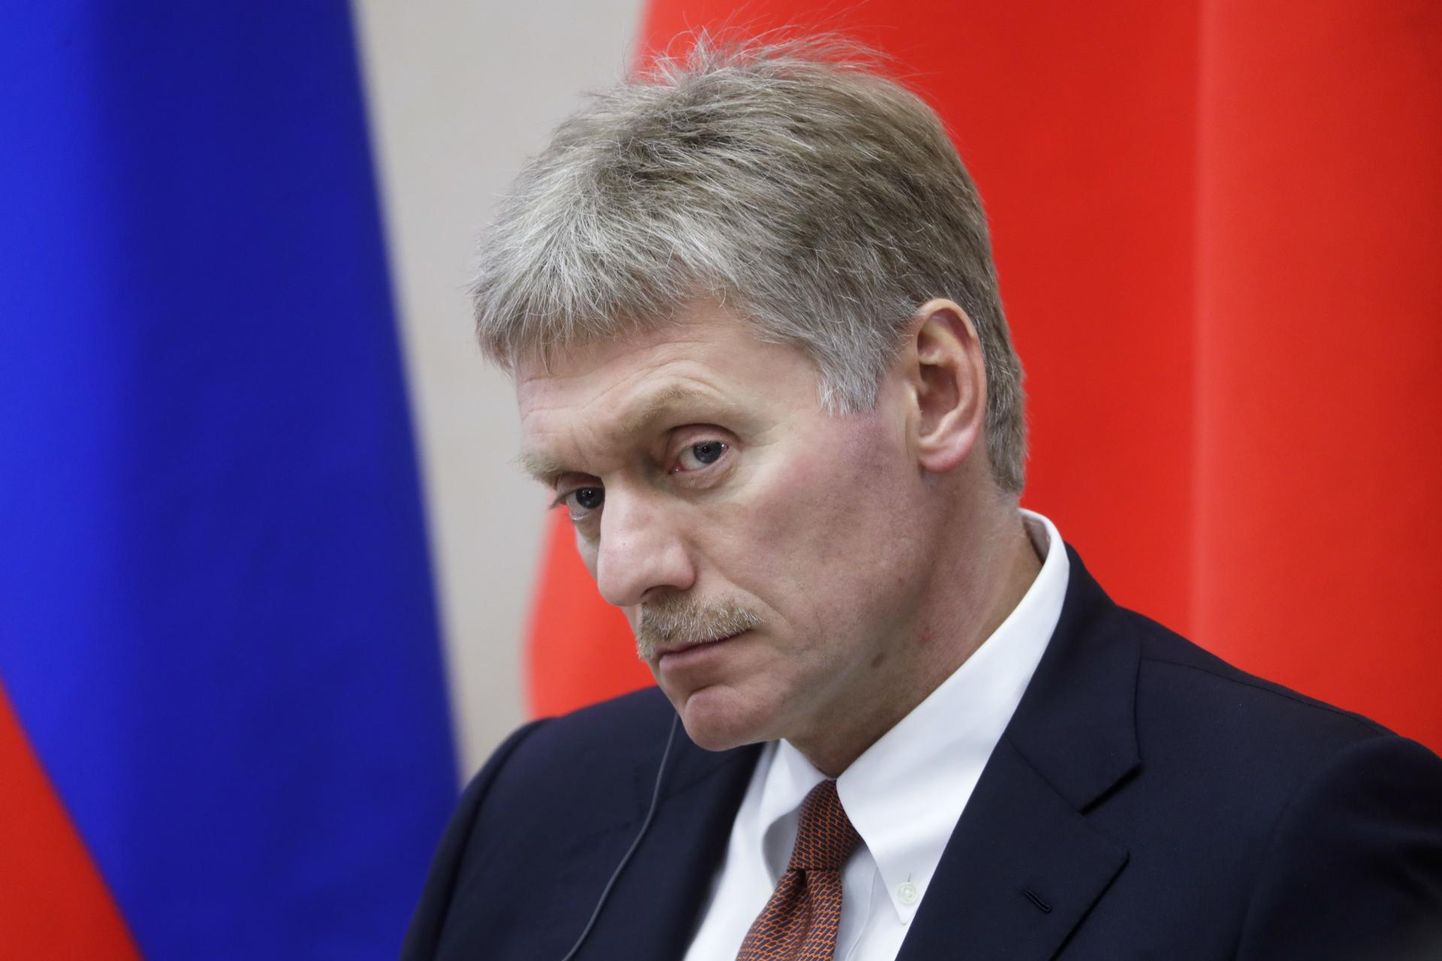 Kremli pressiesindaja Dmitri Peskovi avaldas lootust, et gaasijuhet on võimalik kaitsta välise poliitilise surve eest